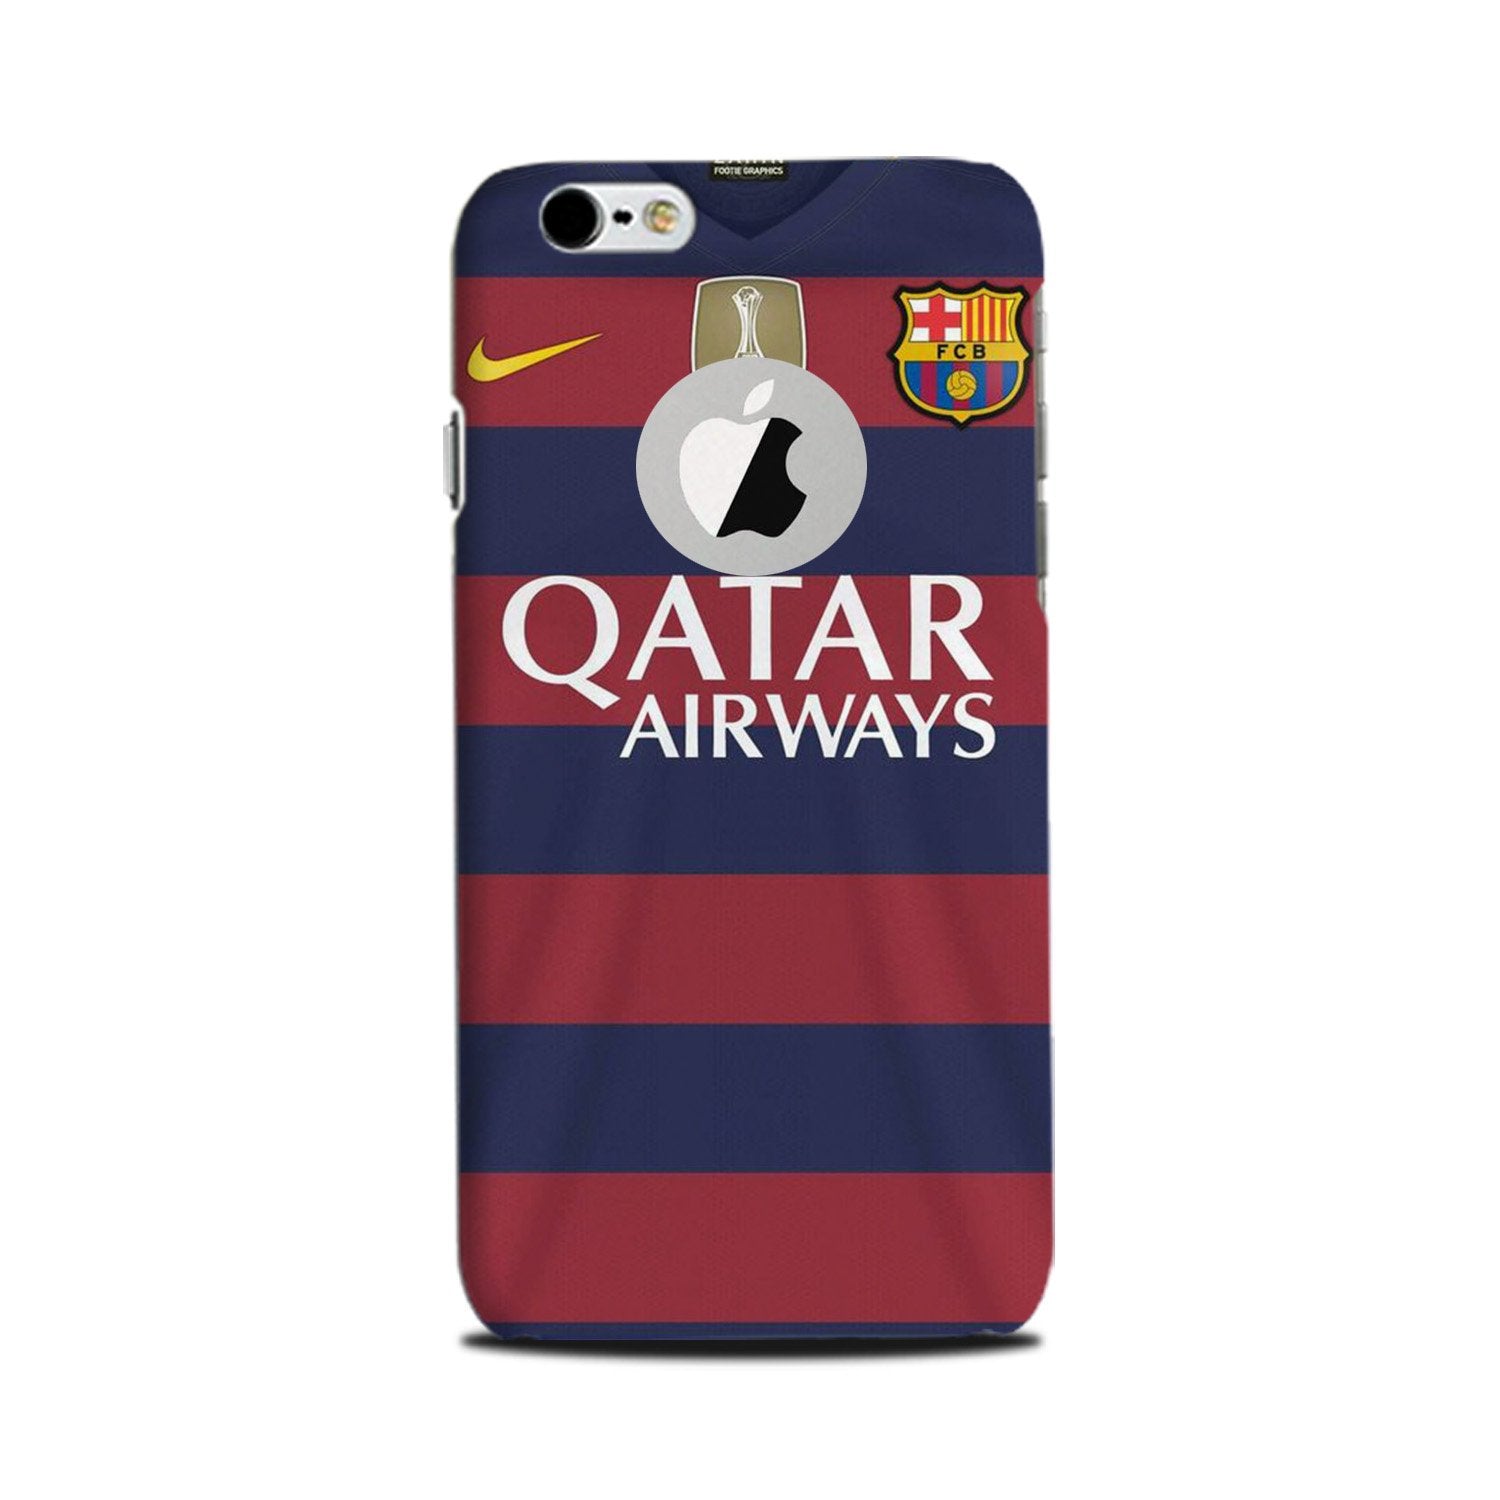 Qatar Airways Case for iPhone 6 Plus / 6s Plus logo cut   (Design - 160)